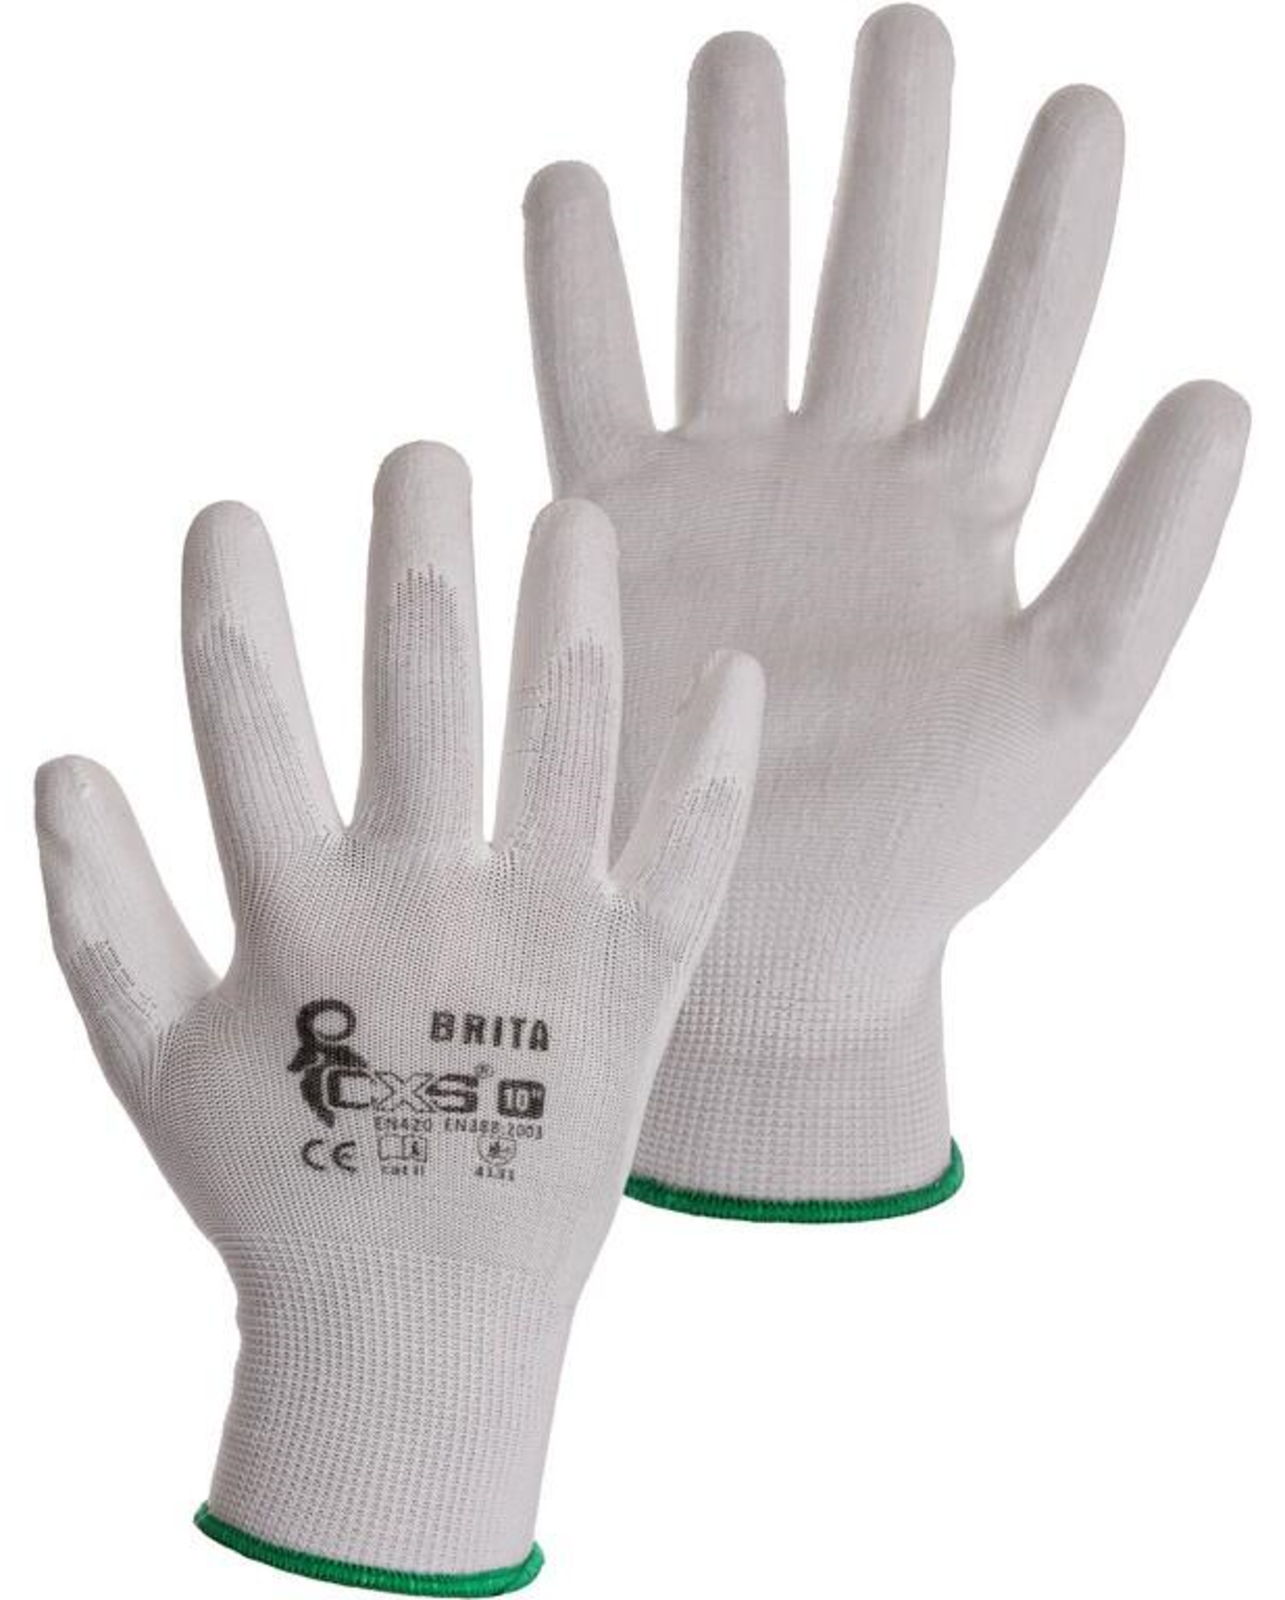 Pracovné rukavice CXS Brita biele - veľkosť: 6/XS, farba: biela